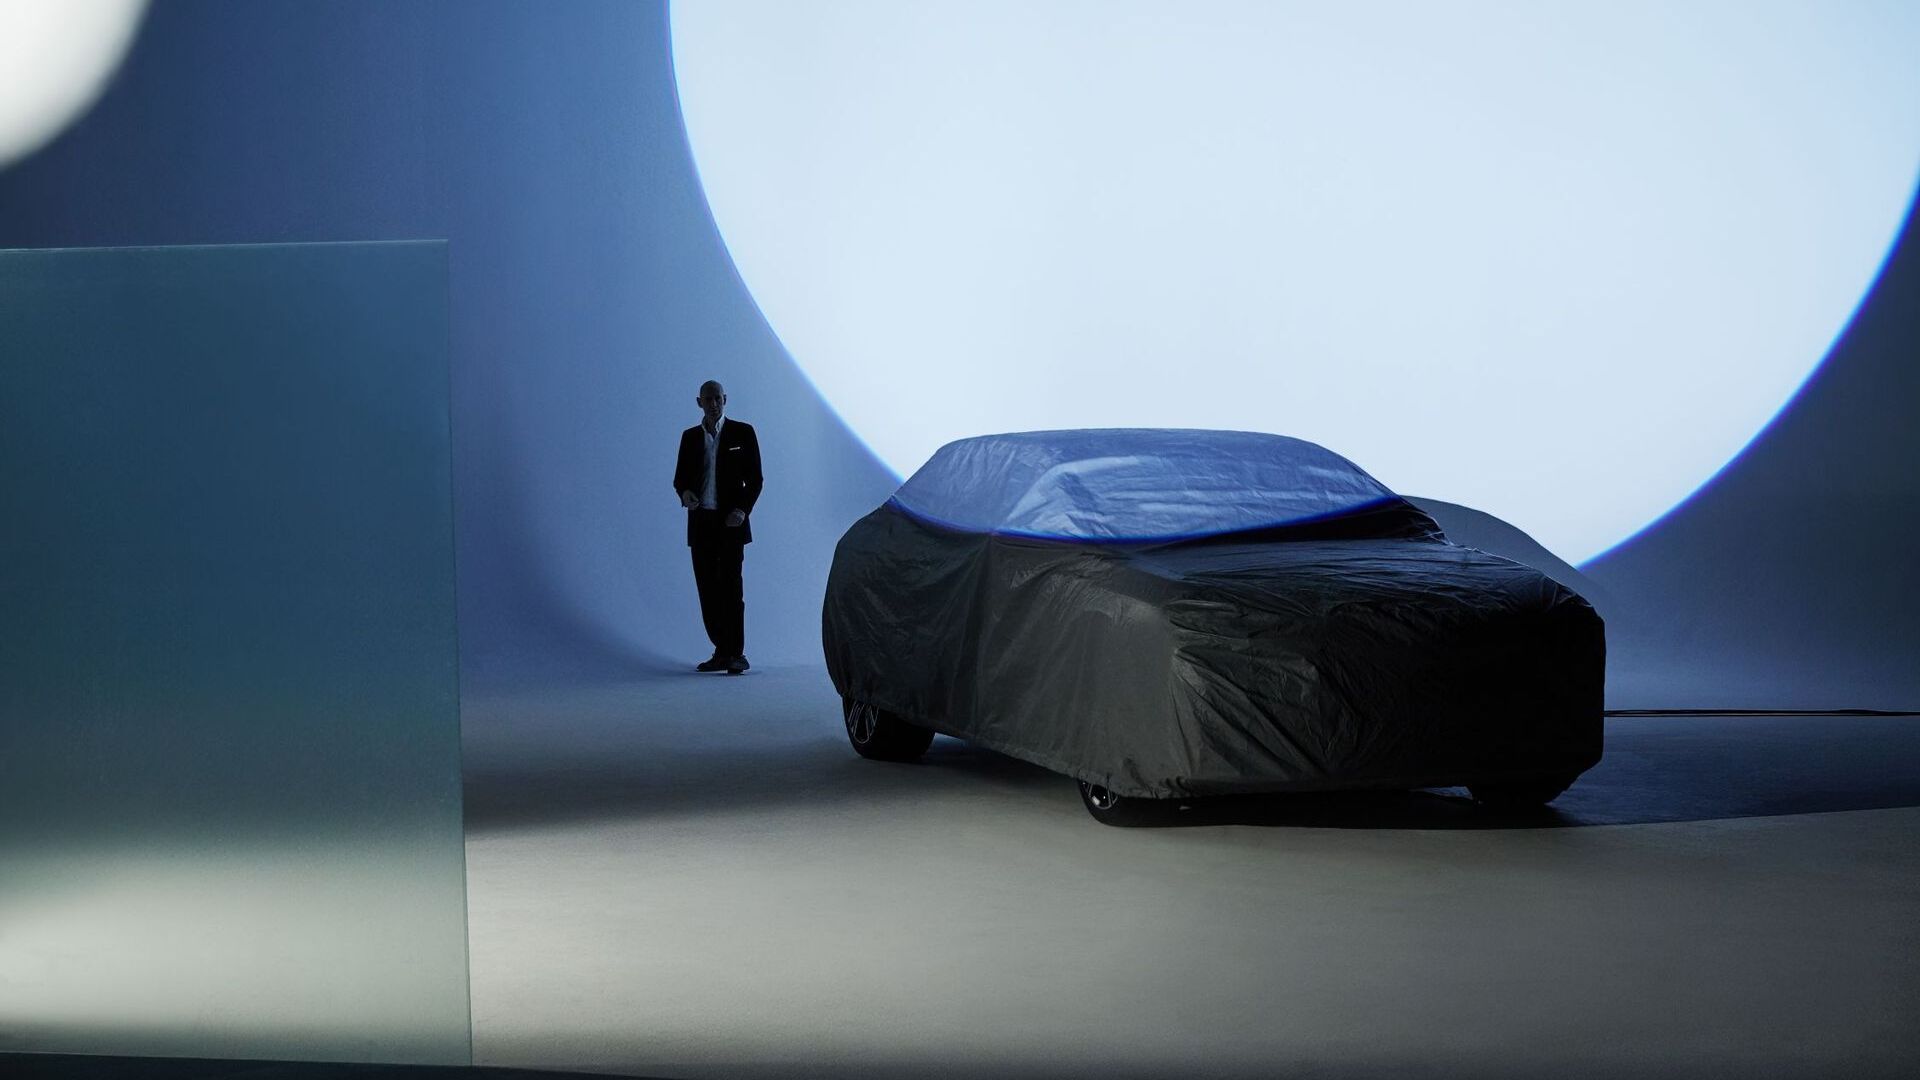 De BMW i7 is door de Britse modefotograaf Nick Knight opnieuw geïnterpreteerd volgens de criteria van Forwardism